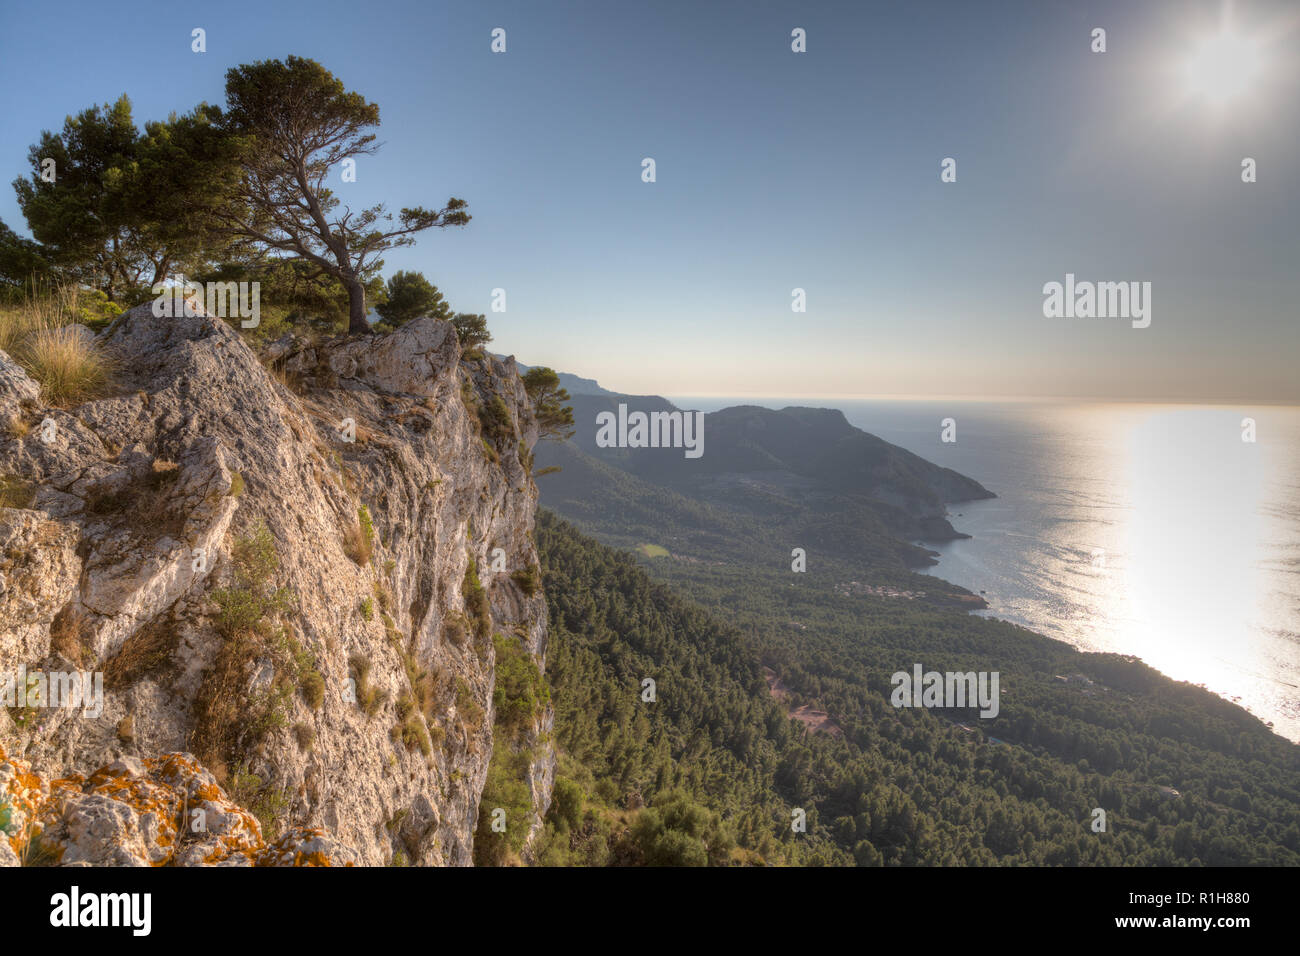 Costa abrupta Serra de Tramuntana, atrás del Mar Mediterráneo, cerca de Valldemossa, Mallorca, España Foto de stock